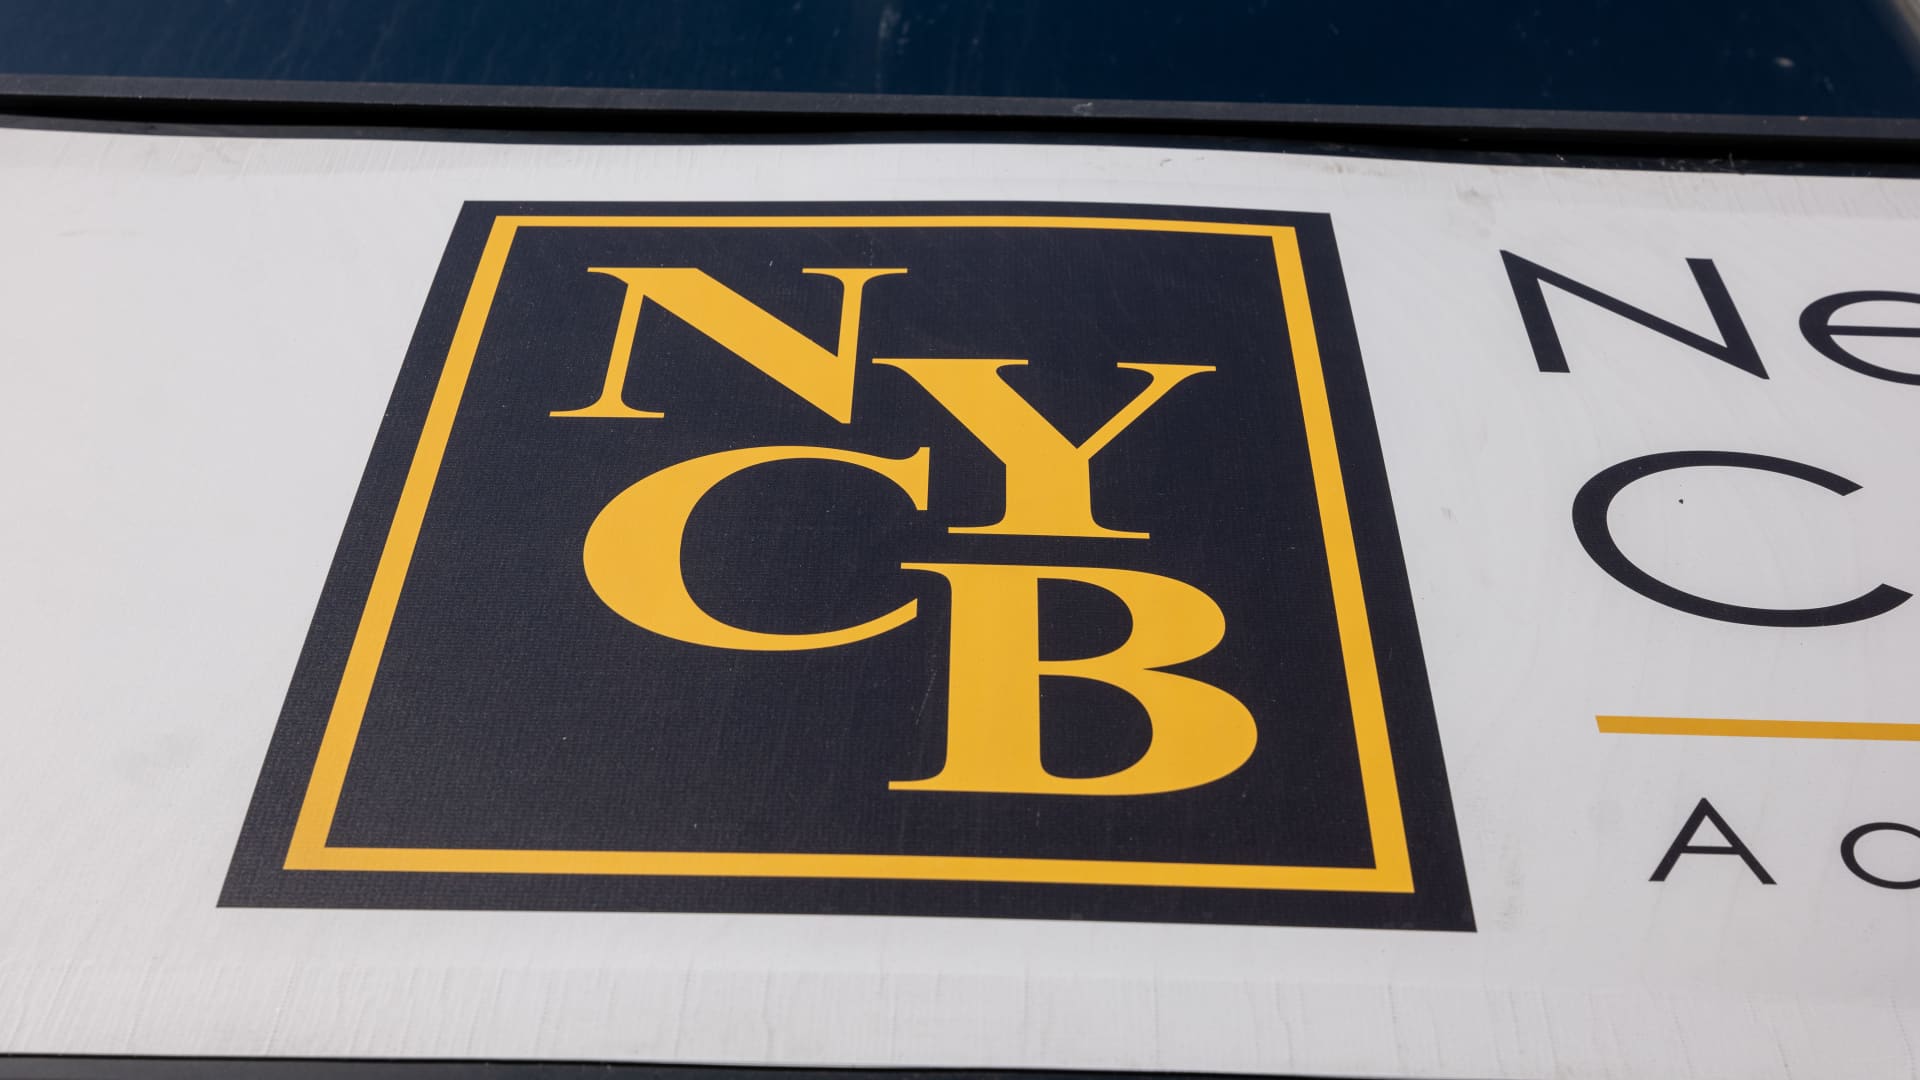 Die NYCB-Aktie fiel um 18 %, nachdem die Bank ein Problem mit „internen Kontrollen“ aufdeckte und ihren CEO wechselte